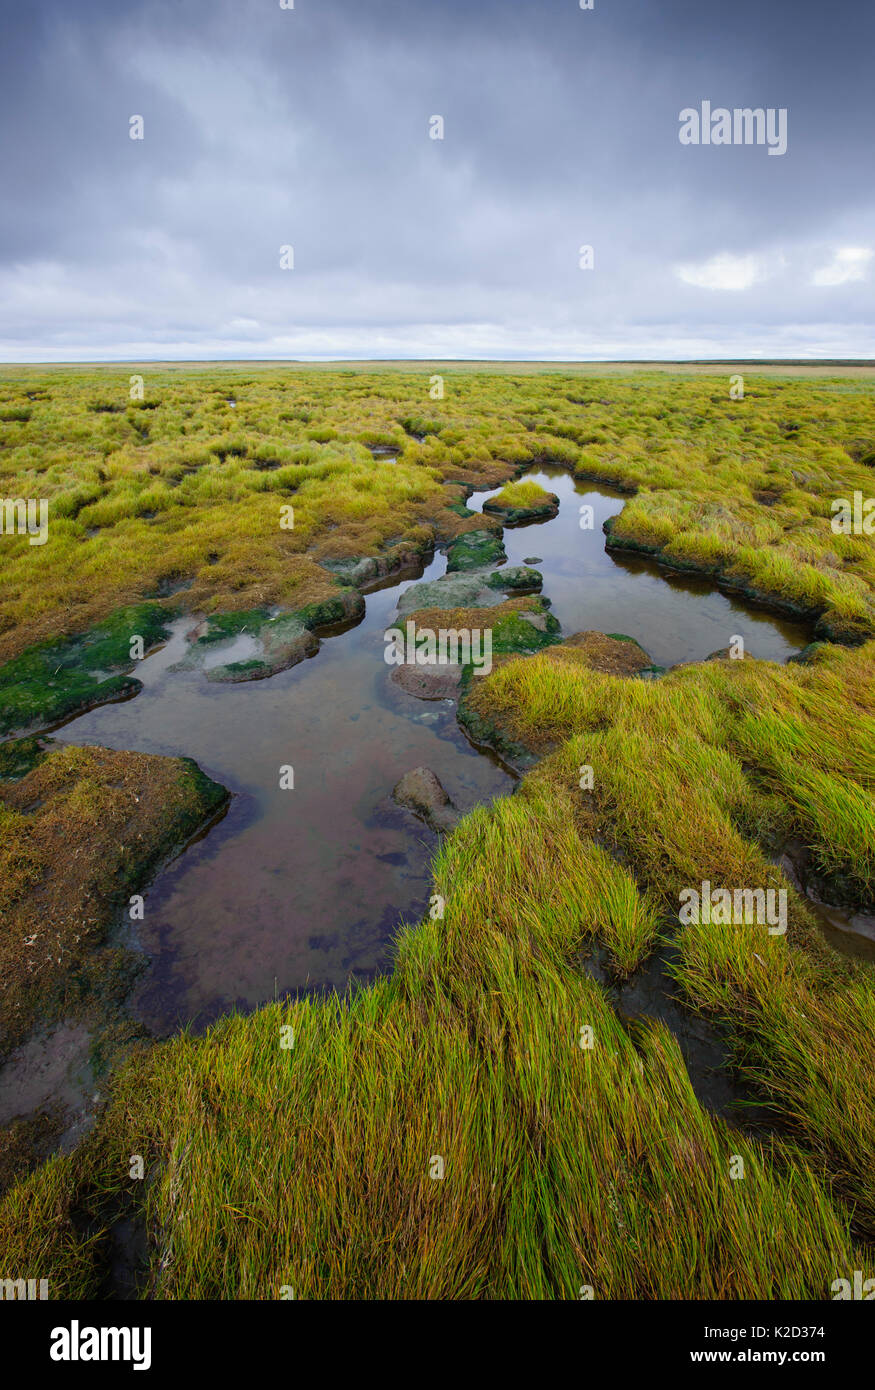 Bord de la toundra de marée à l'intérieur des terres à partir de la mer de Béring. Yukon Delta National Wildlife Refuge, en Alaska, aux États-Unis. Septembre. Banque D'Images